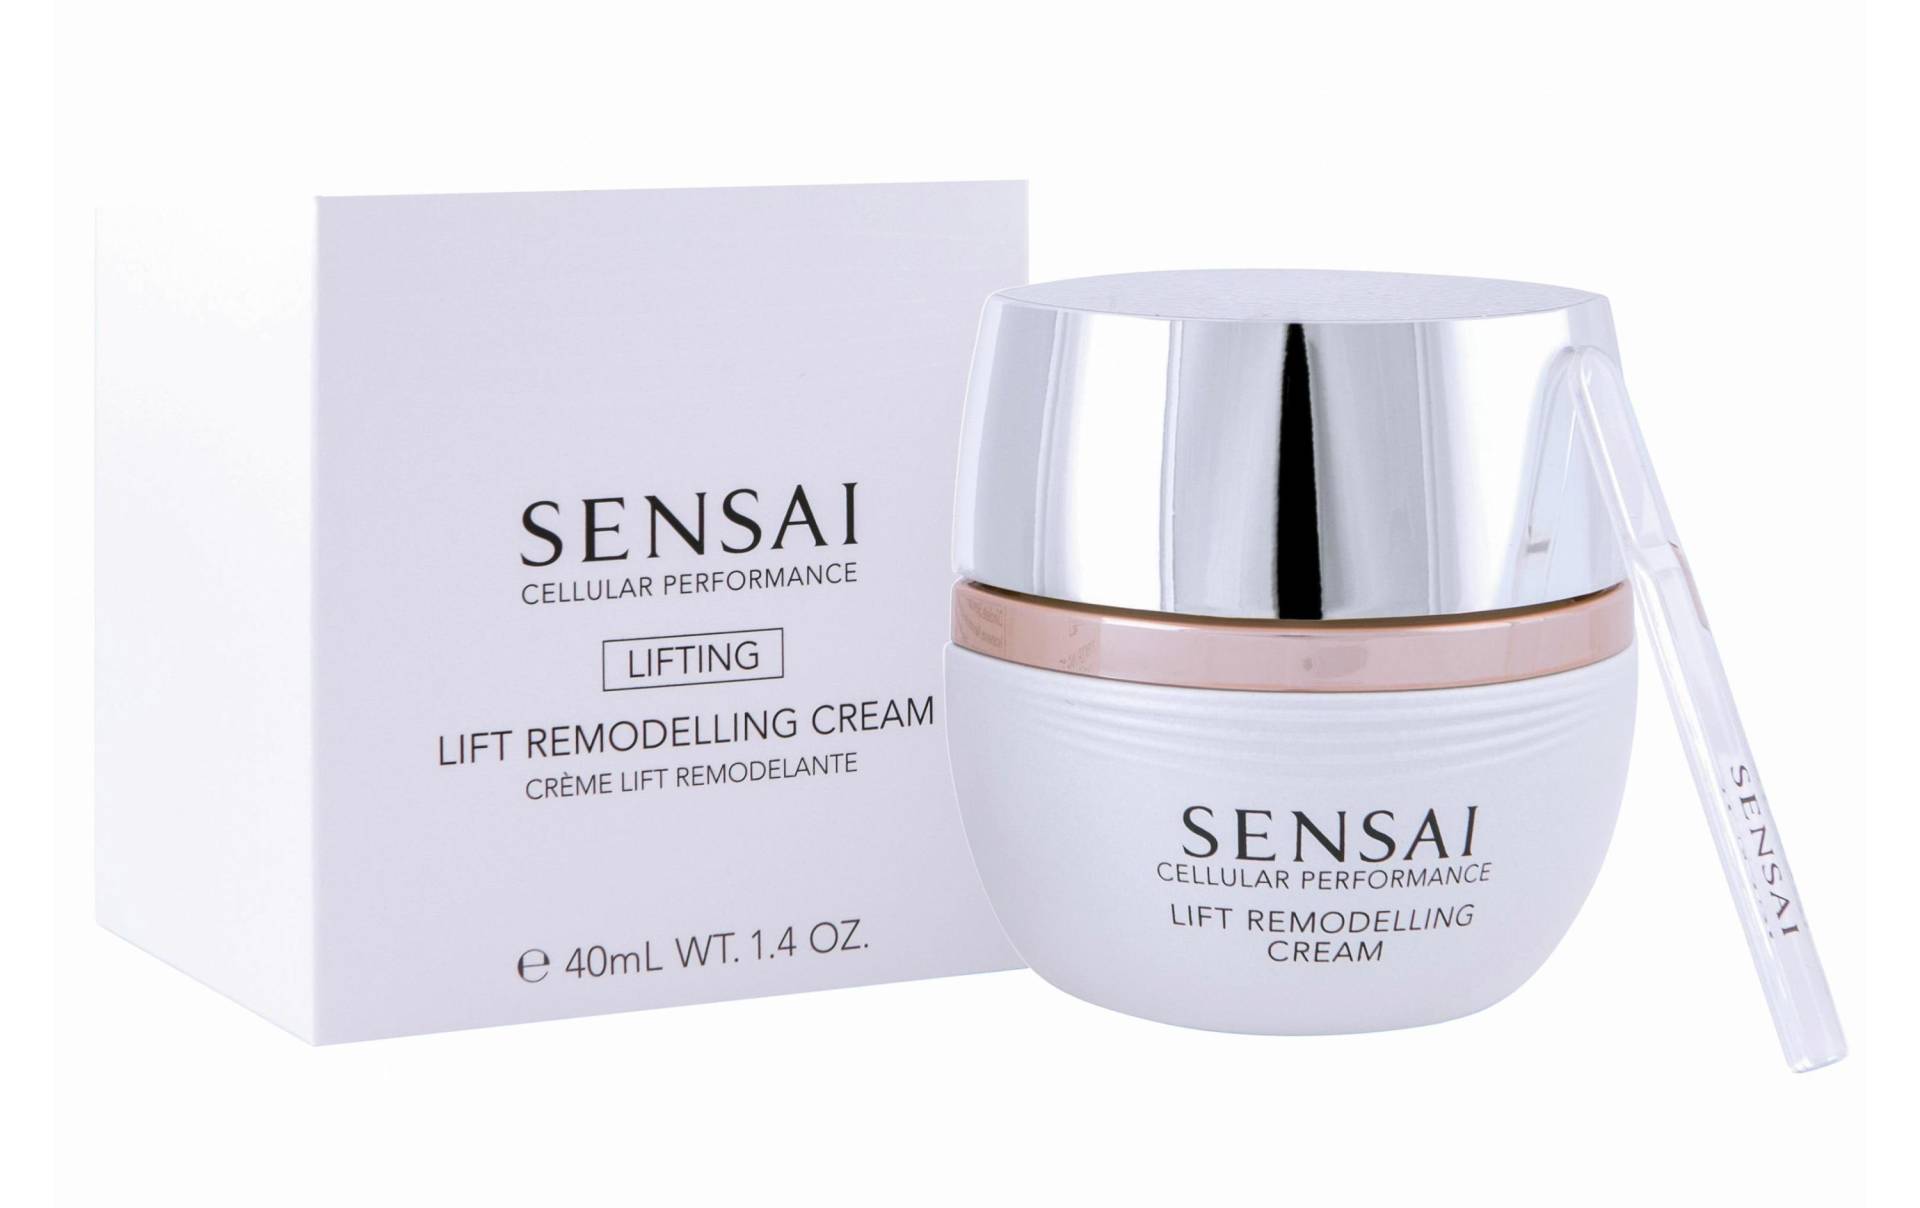 SENSAI Tagescreme »Cellular Performance Lift Remodelling 40 ml« von Sensai